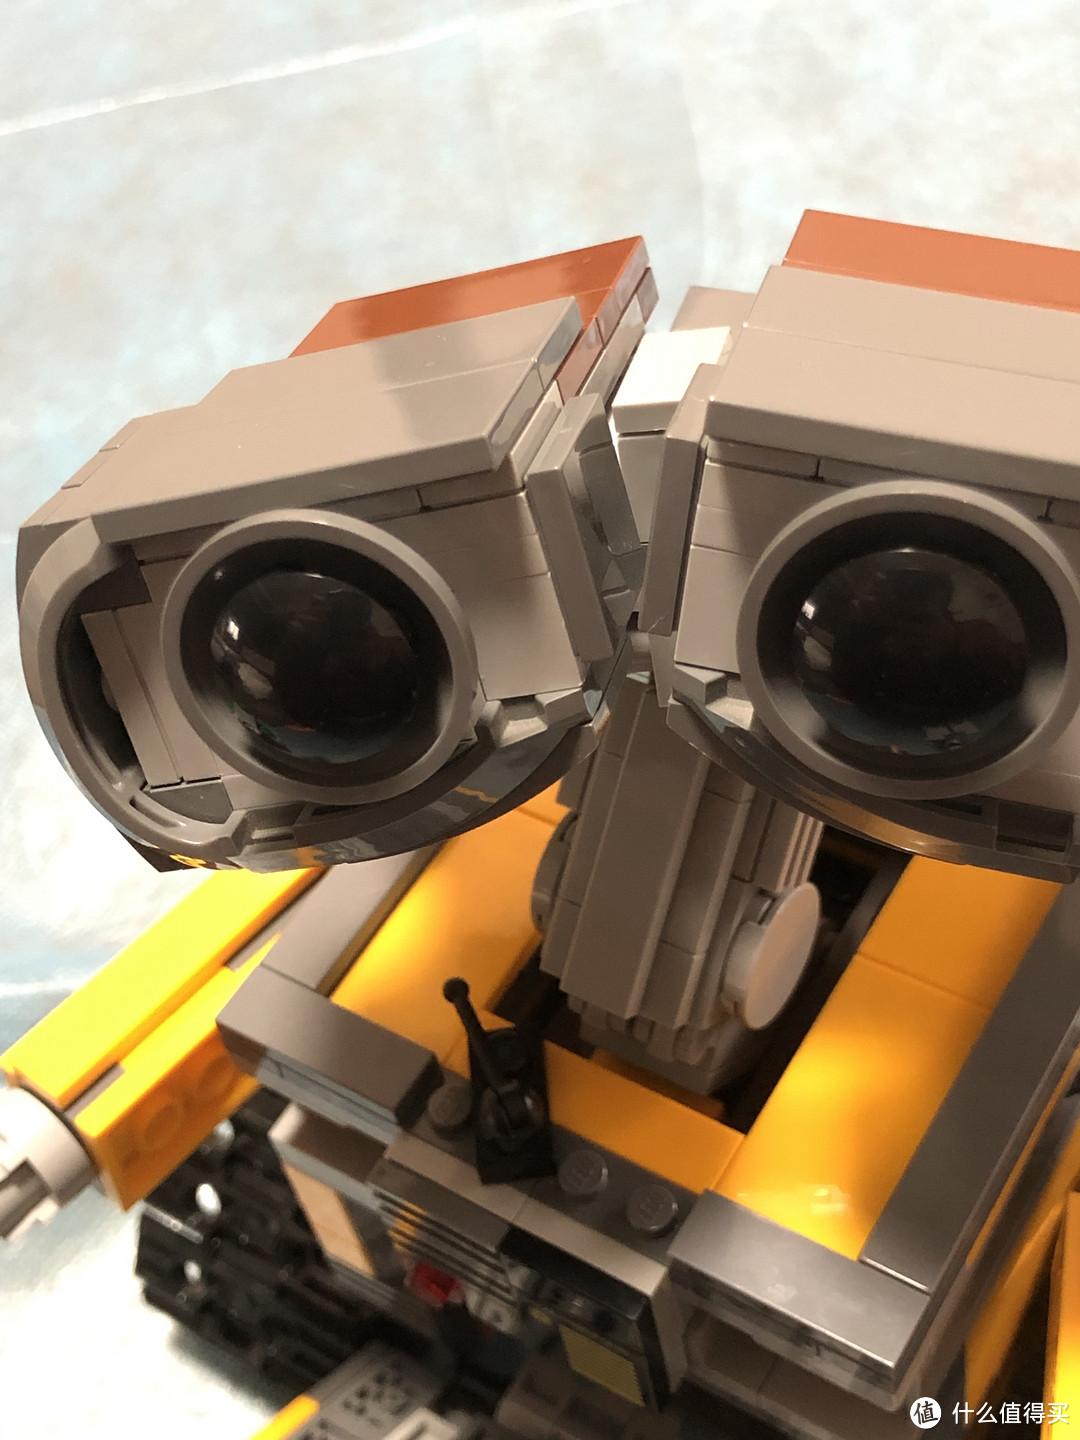 乐高21303 WALL-E的清洁、补件和重组记录